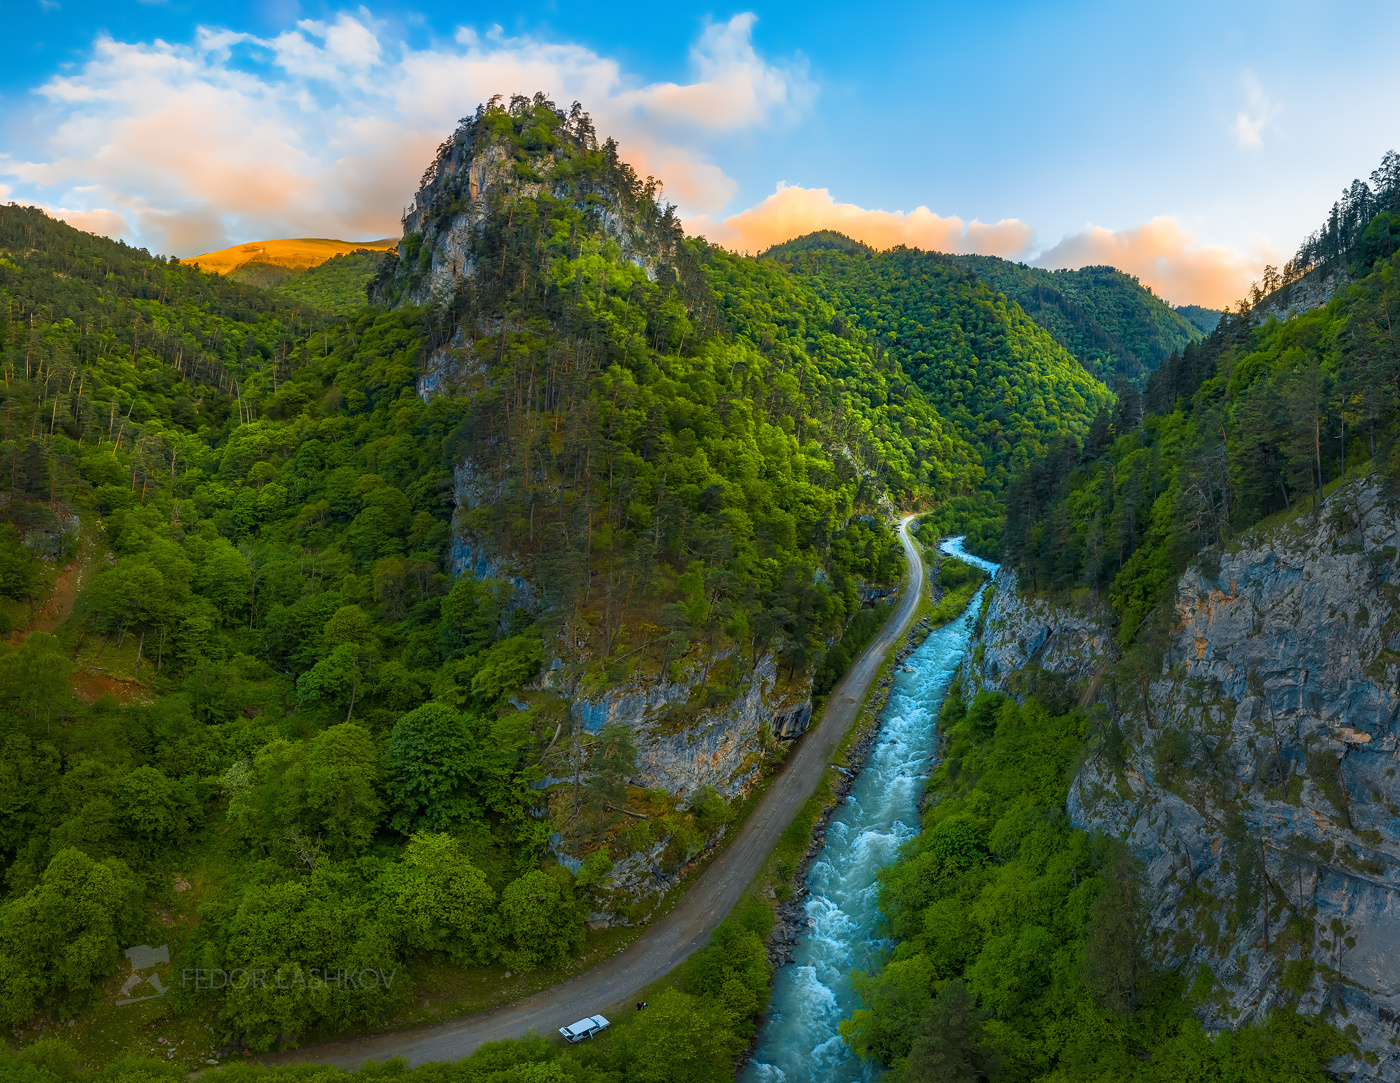 Новый мир Горы гора в горах облака Северный Кавказ вершины скалы река горная скалистое ущелье дорога путешествие туризм исследование закат машина лес лесное